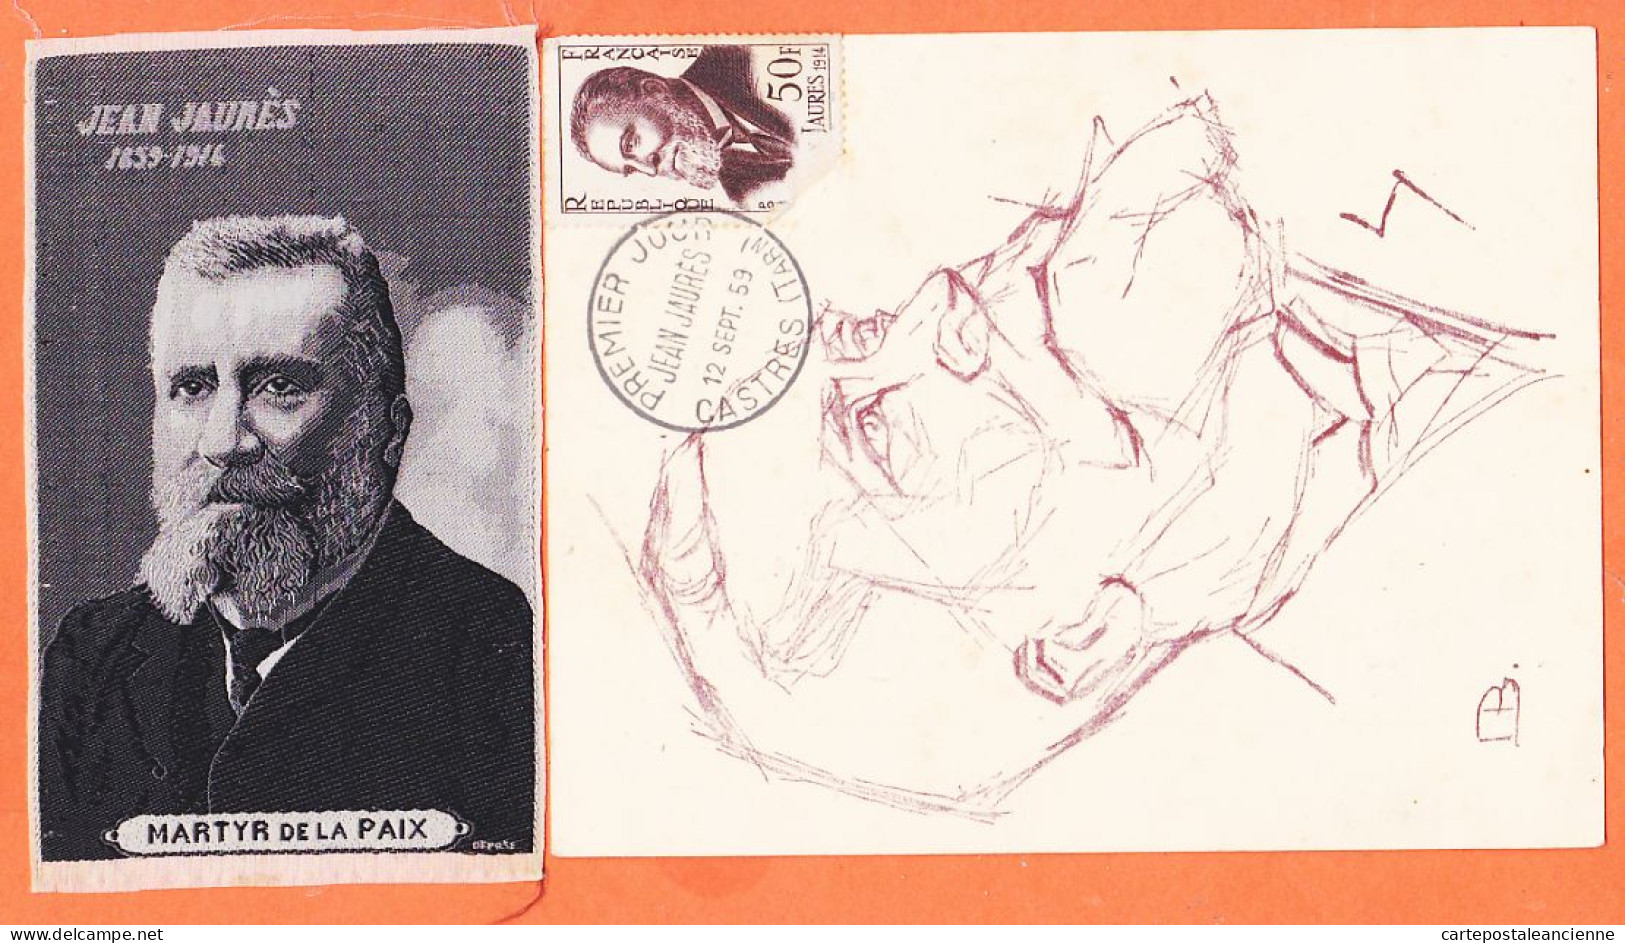 00360 ● JAURES Député SOCIALISTE Assassiné à PARIS 1859-1914 Apôtre PAIX + Portrait Tissé SOIE MARTYR 6,5x11-S.F.IO - Eventos